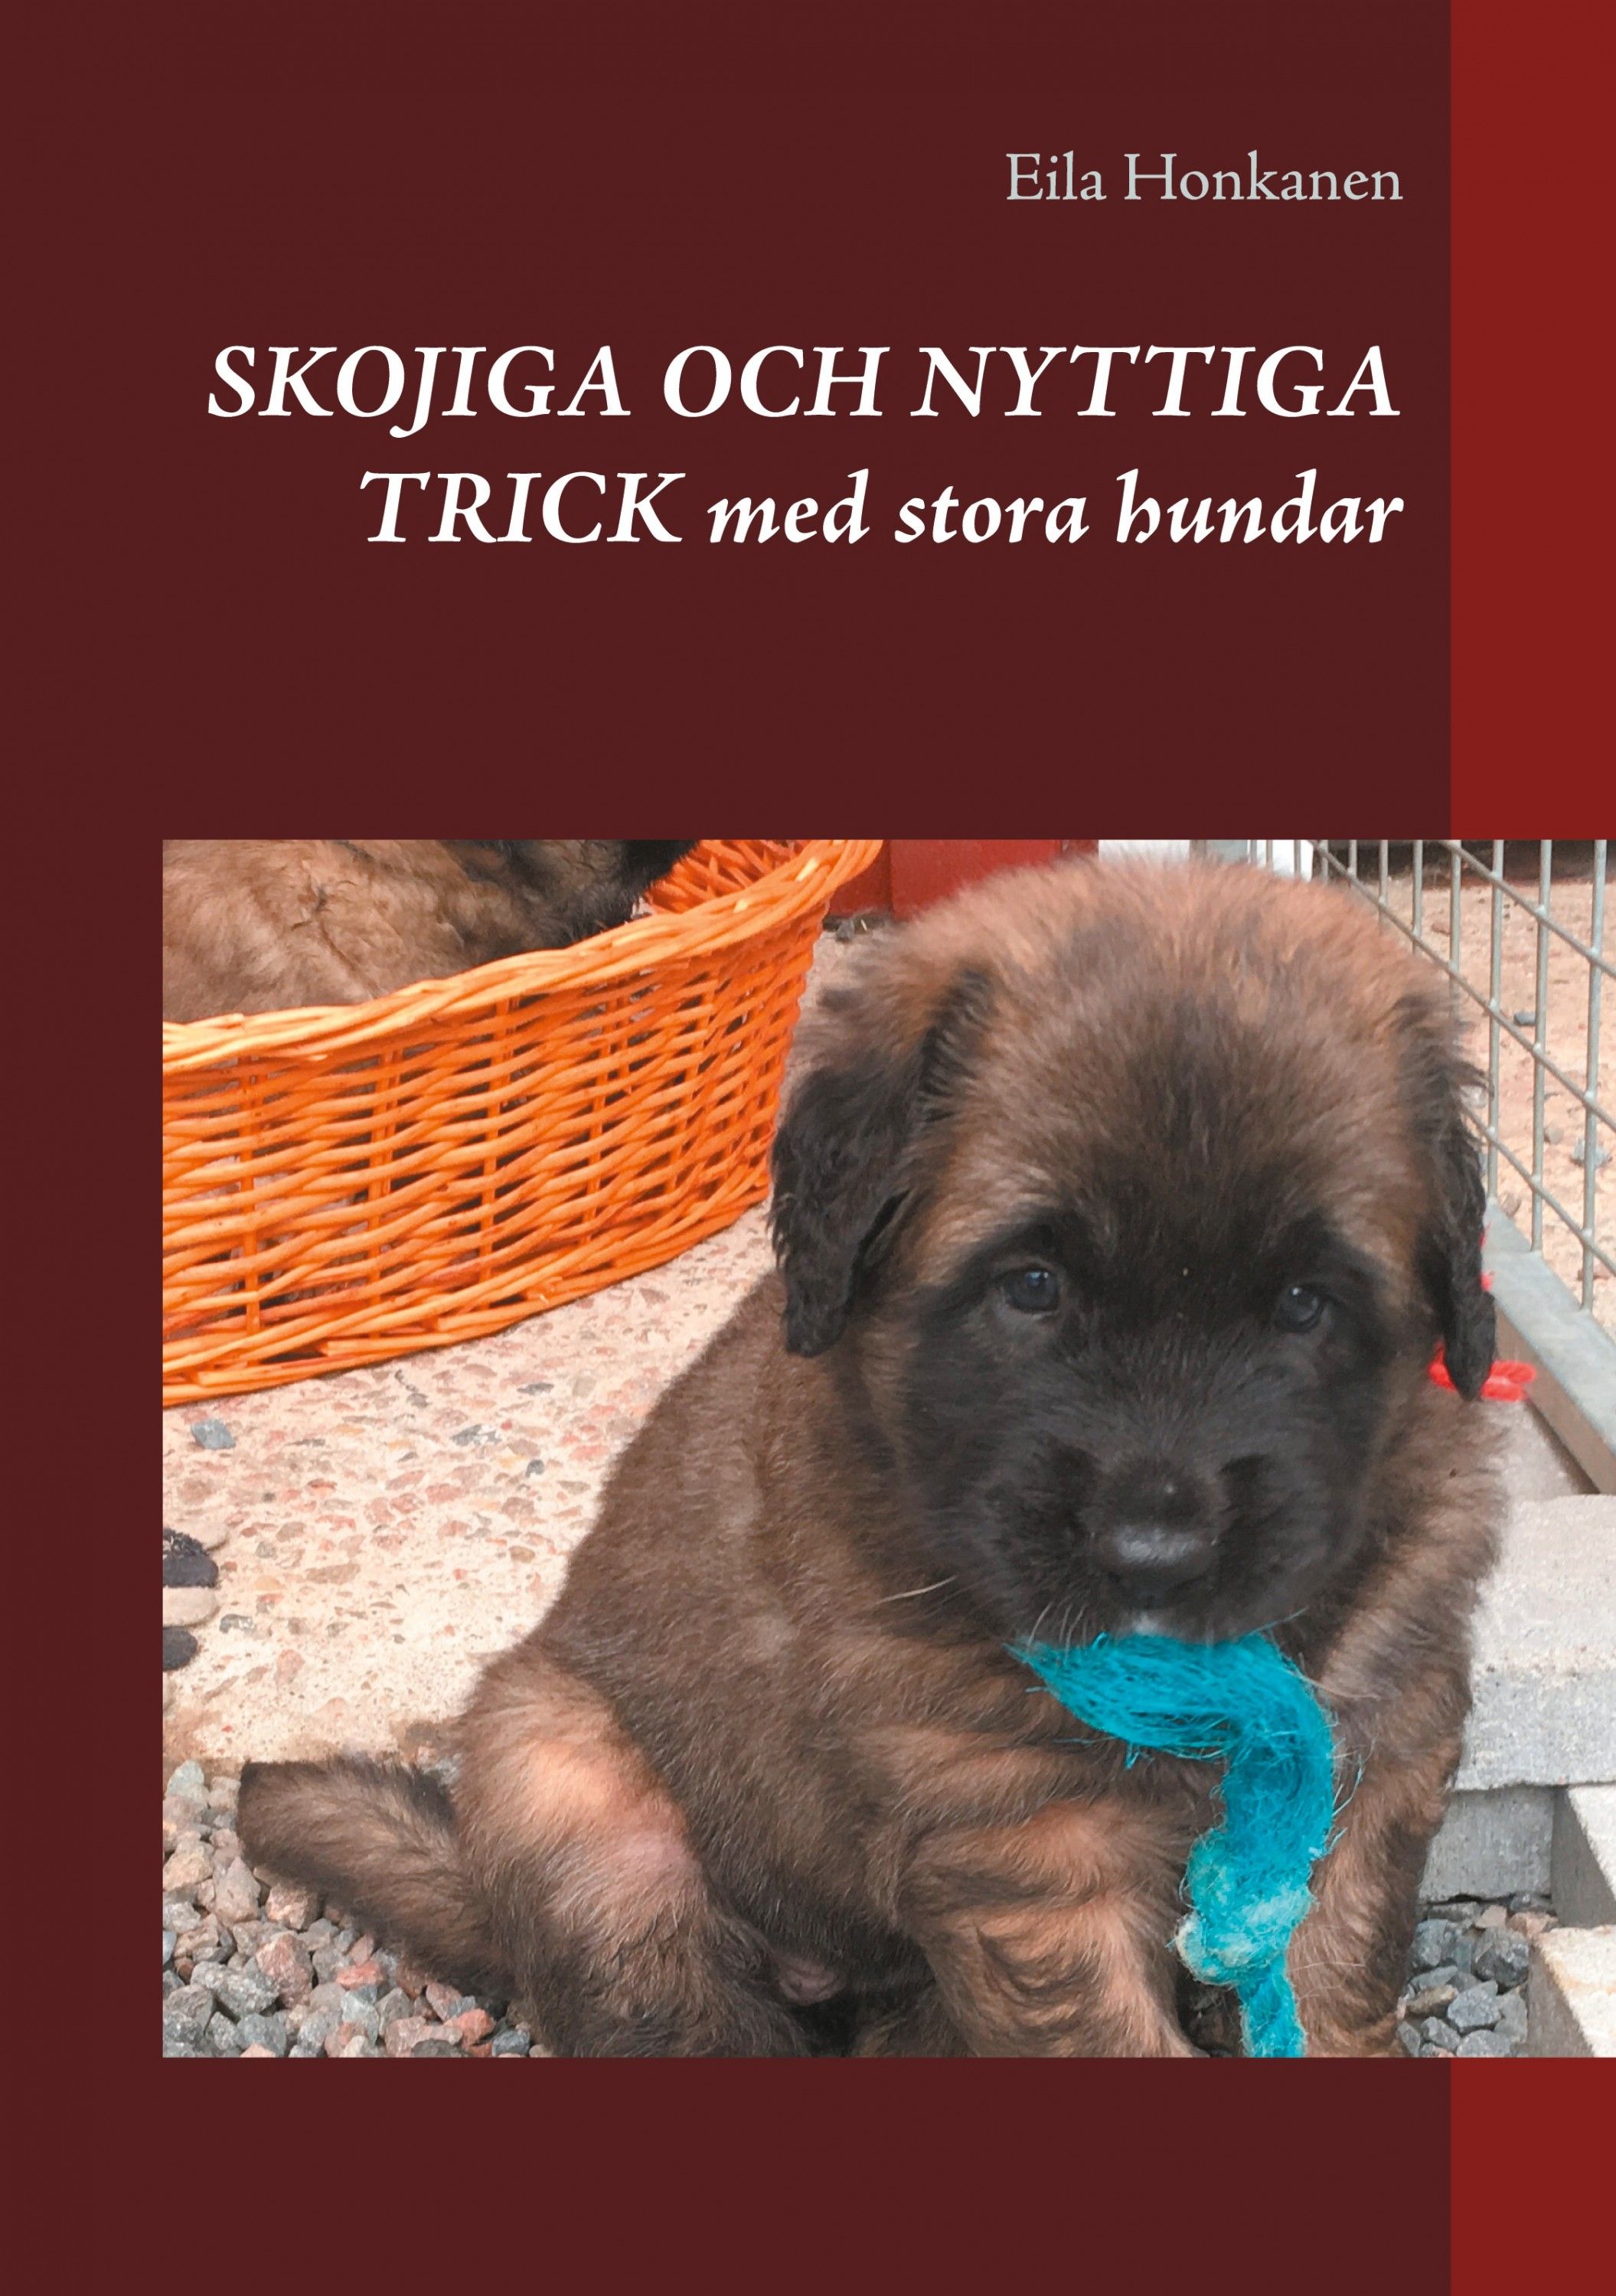 Eila Honkanen : Skojiga och nyttiga trick med stora hundar